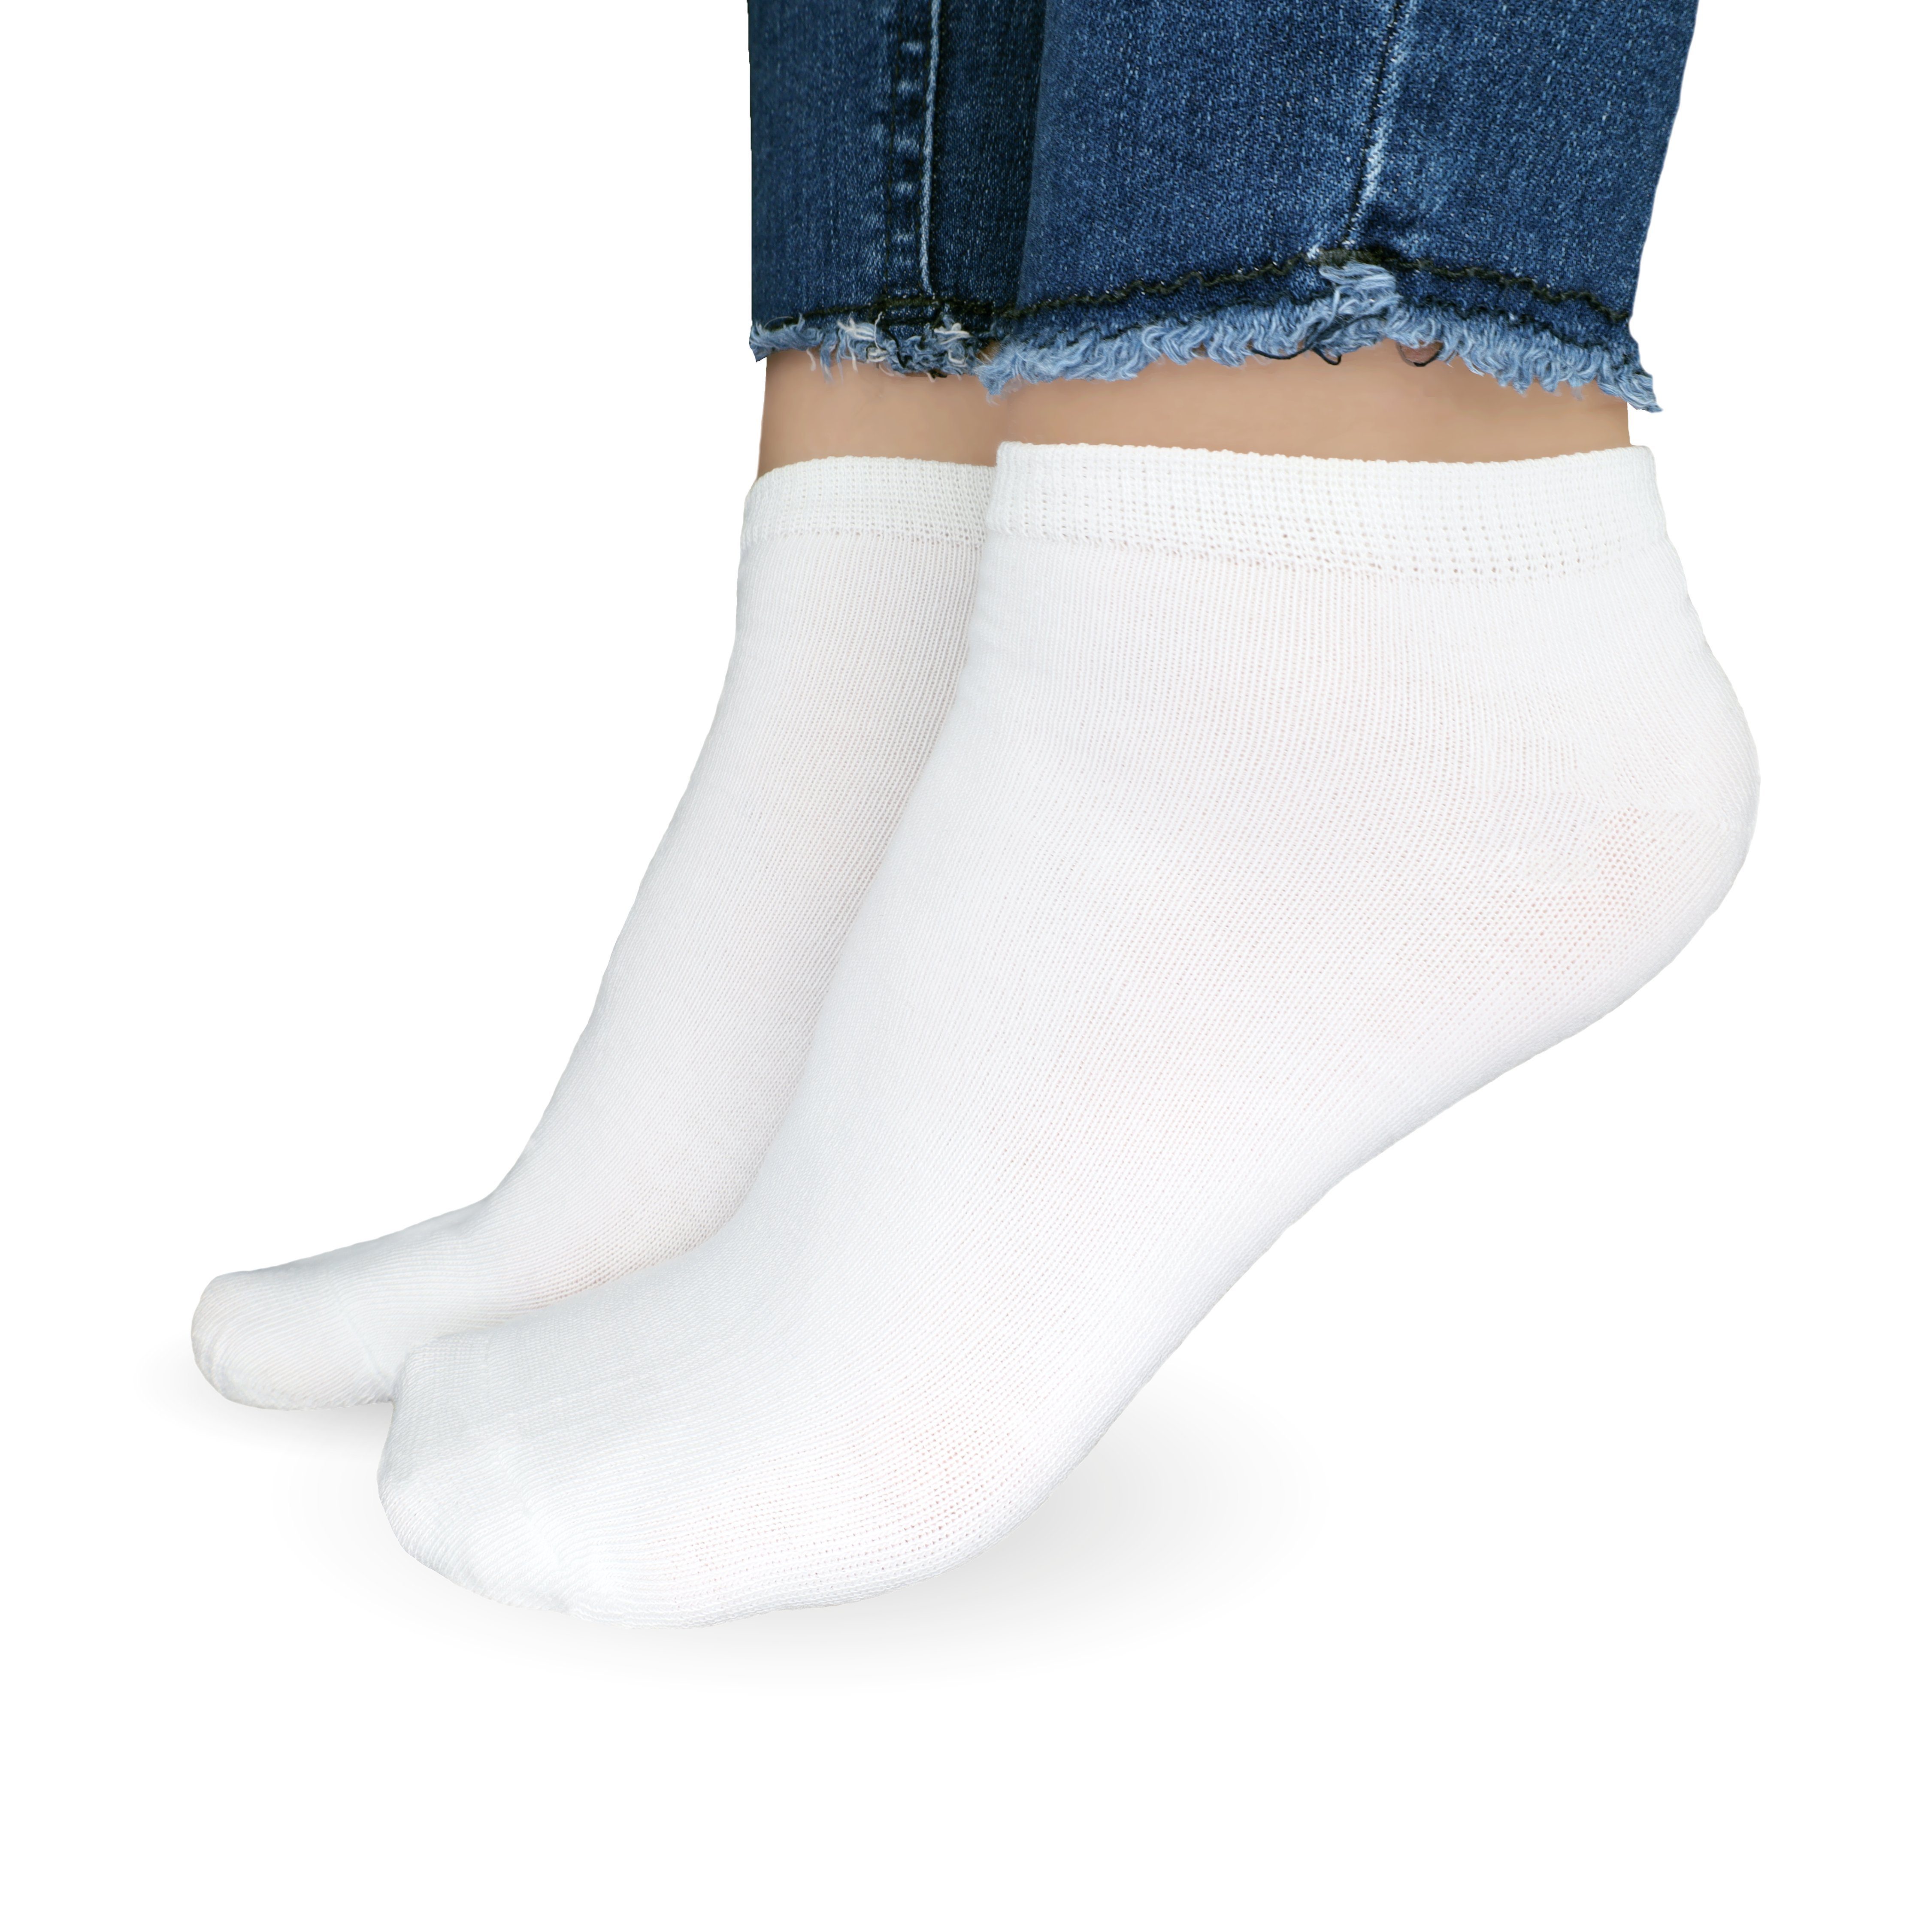 Damen 5-20 Sneaker Schwarz Baumwolle Unisex (Größen 35-46, SO.I aus Weiß & 10x Herren Freizeitsocken atmungsaktive Socken + Paar) 10x Socken